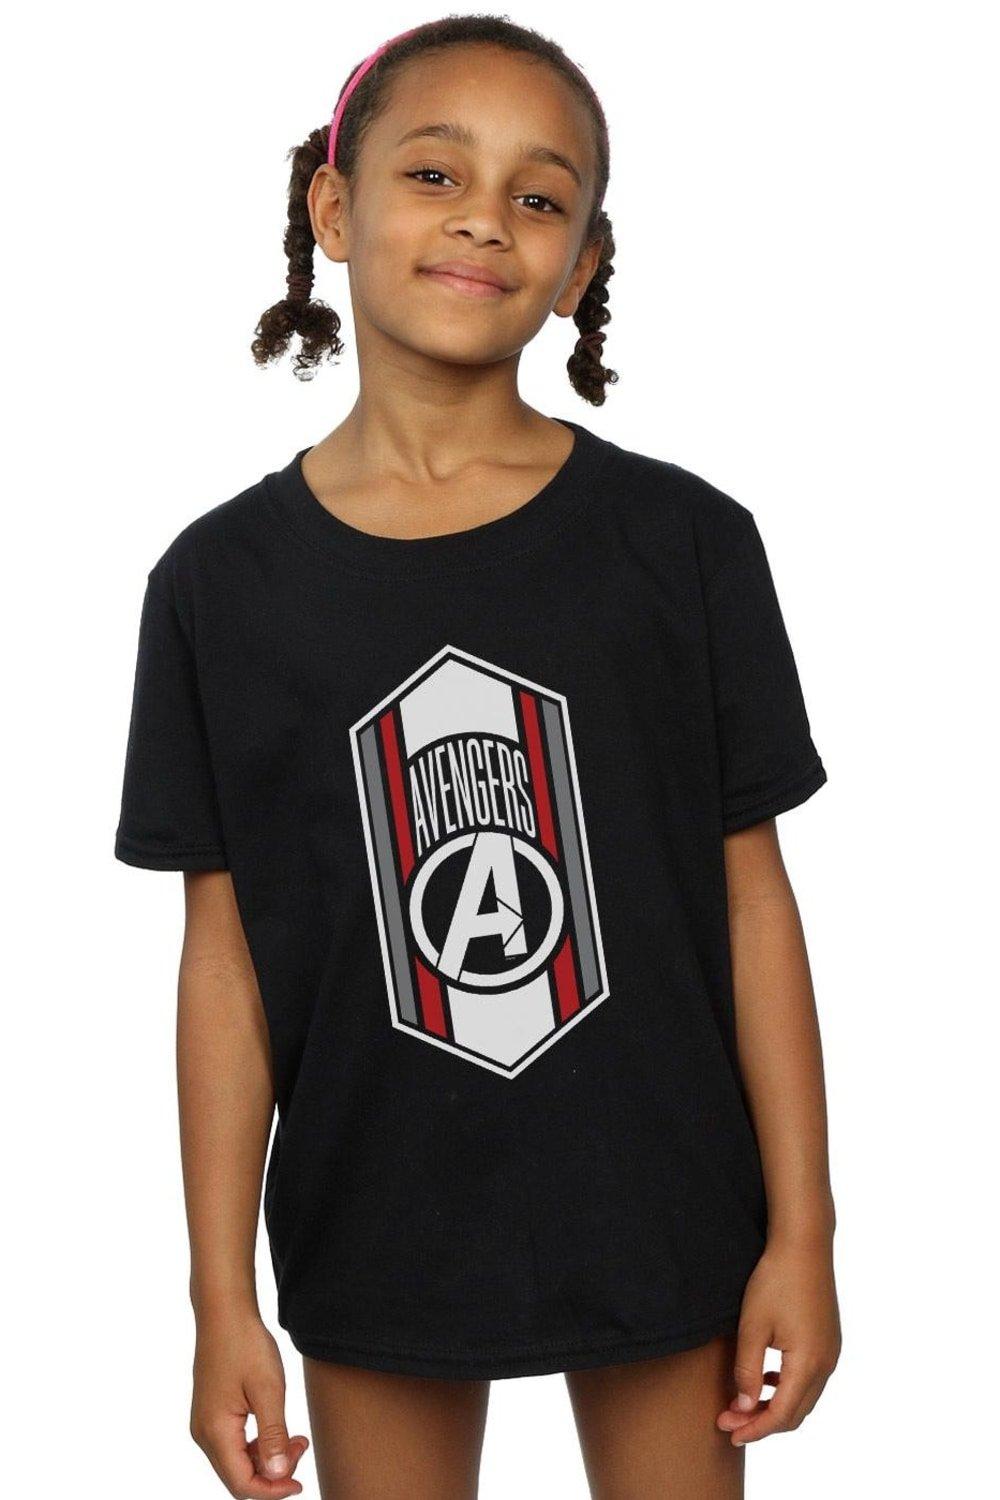 Avengers Endgame Team Icon Cotton T-Shirt